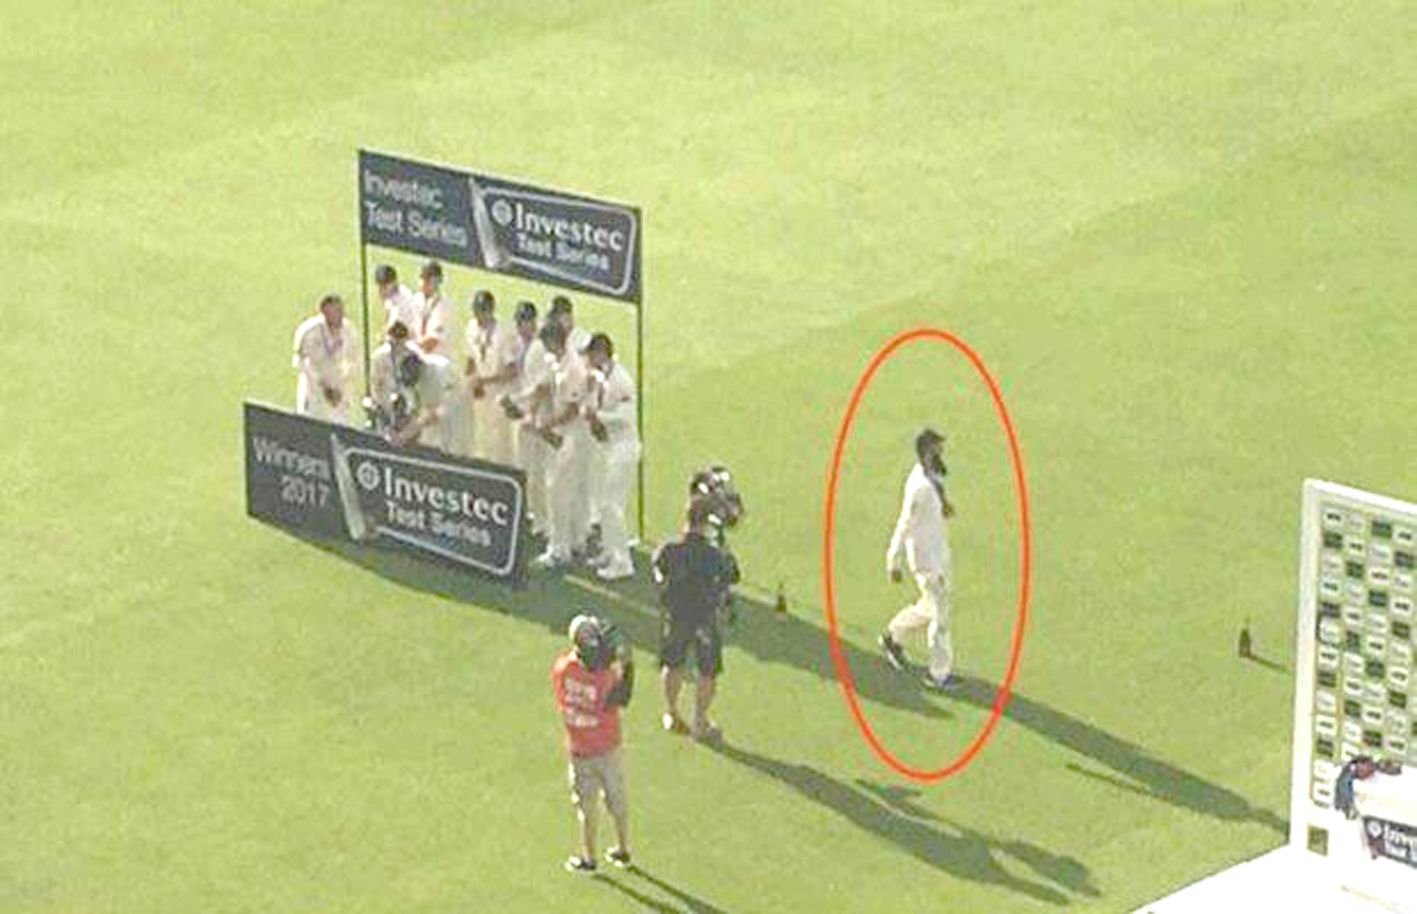 વાયરલ તસવીરનો દાવો : ઈંગ્લેન્ડ ક્રિકેટ ટીમના  મોઈનઅલીએ દારૂ સાથે જશ્ન મનાવવા કર્યો ઈન્કાર